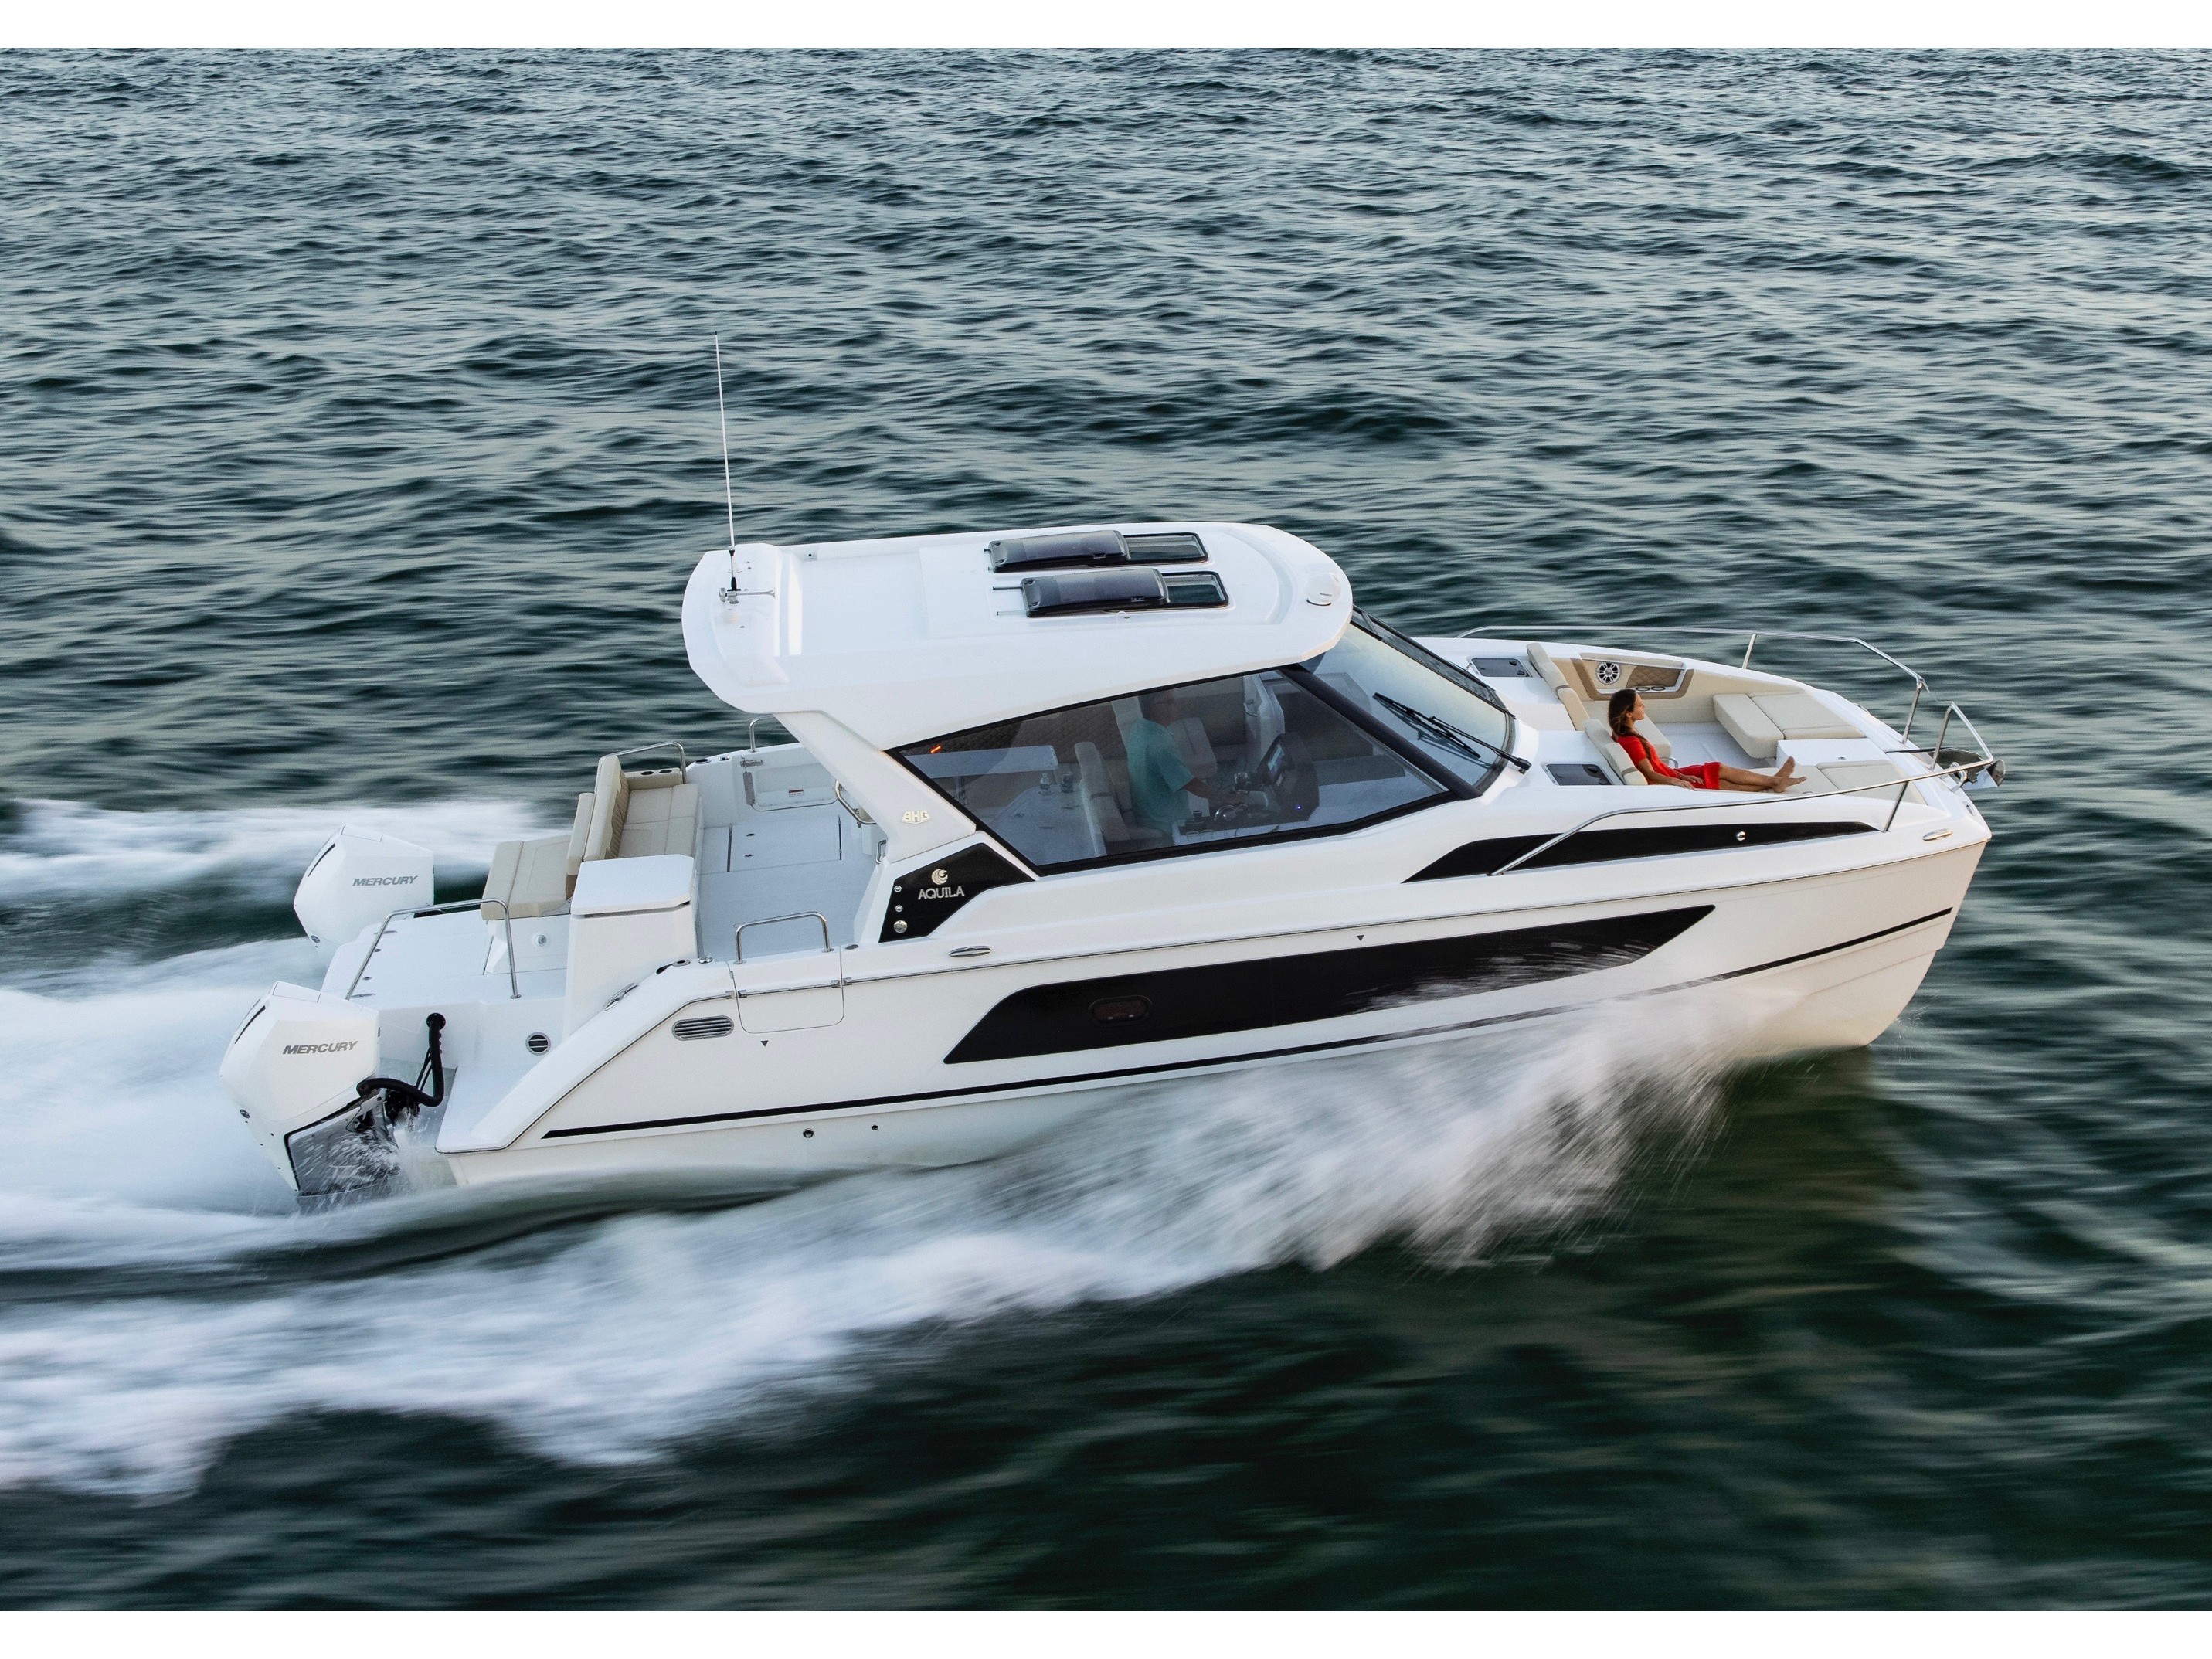 Aquila 36 - Motor Boat Charter Sardinia & Boat hire in Italy Sardinia Costa Smeralda Cannigione Cannigione 2